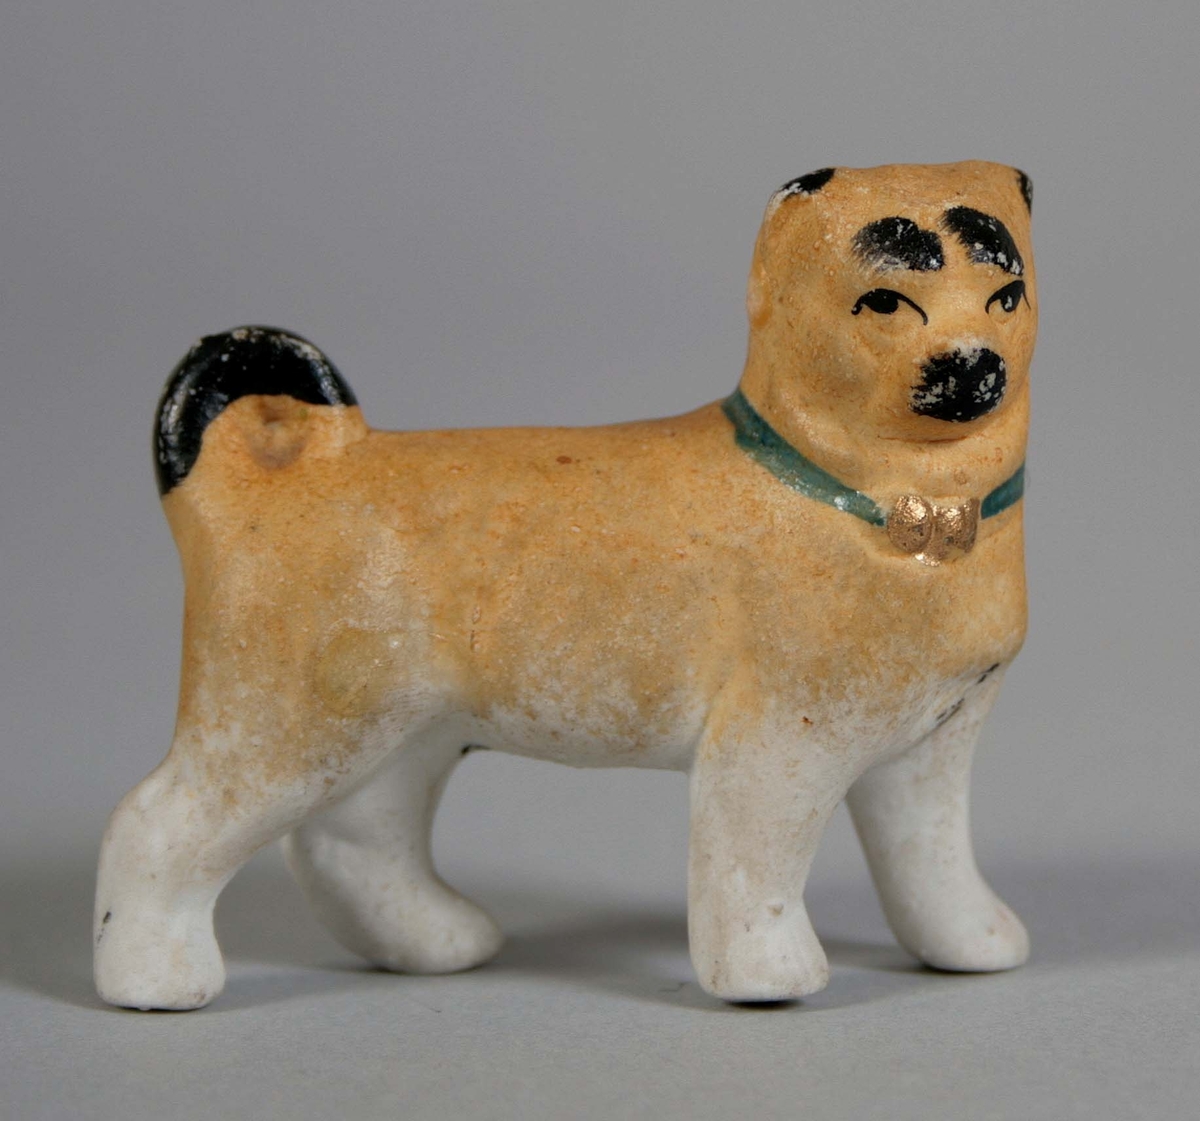 Stående hund med högervridet huvud i oglaserat porslin. Målad gulbrun med svans och ansiktsdetaljer i svart. Halsband i grönt med guldrosett.